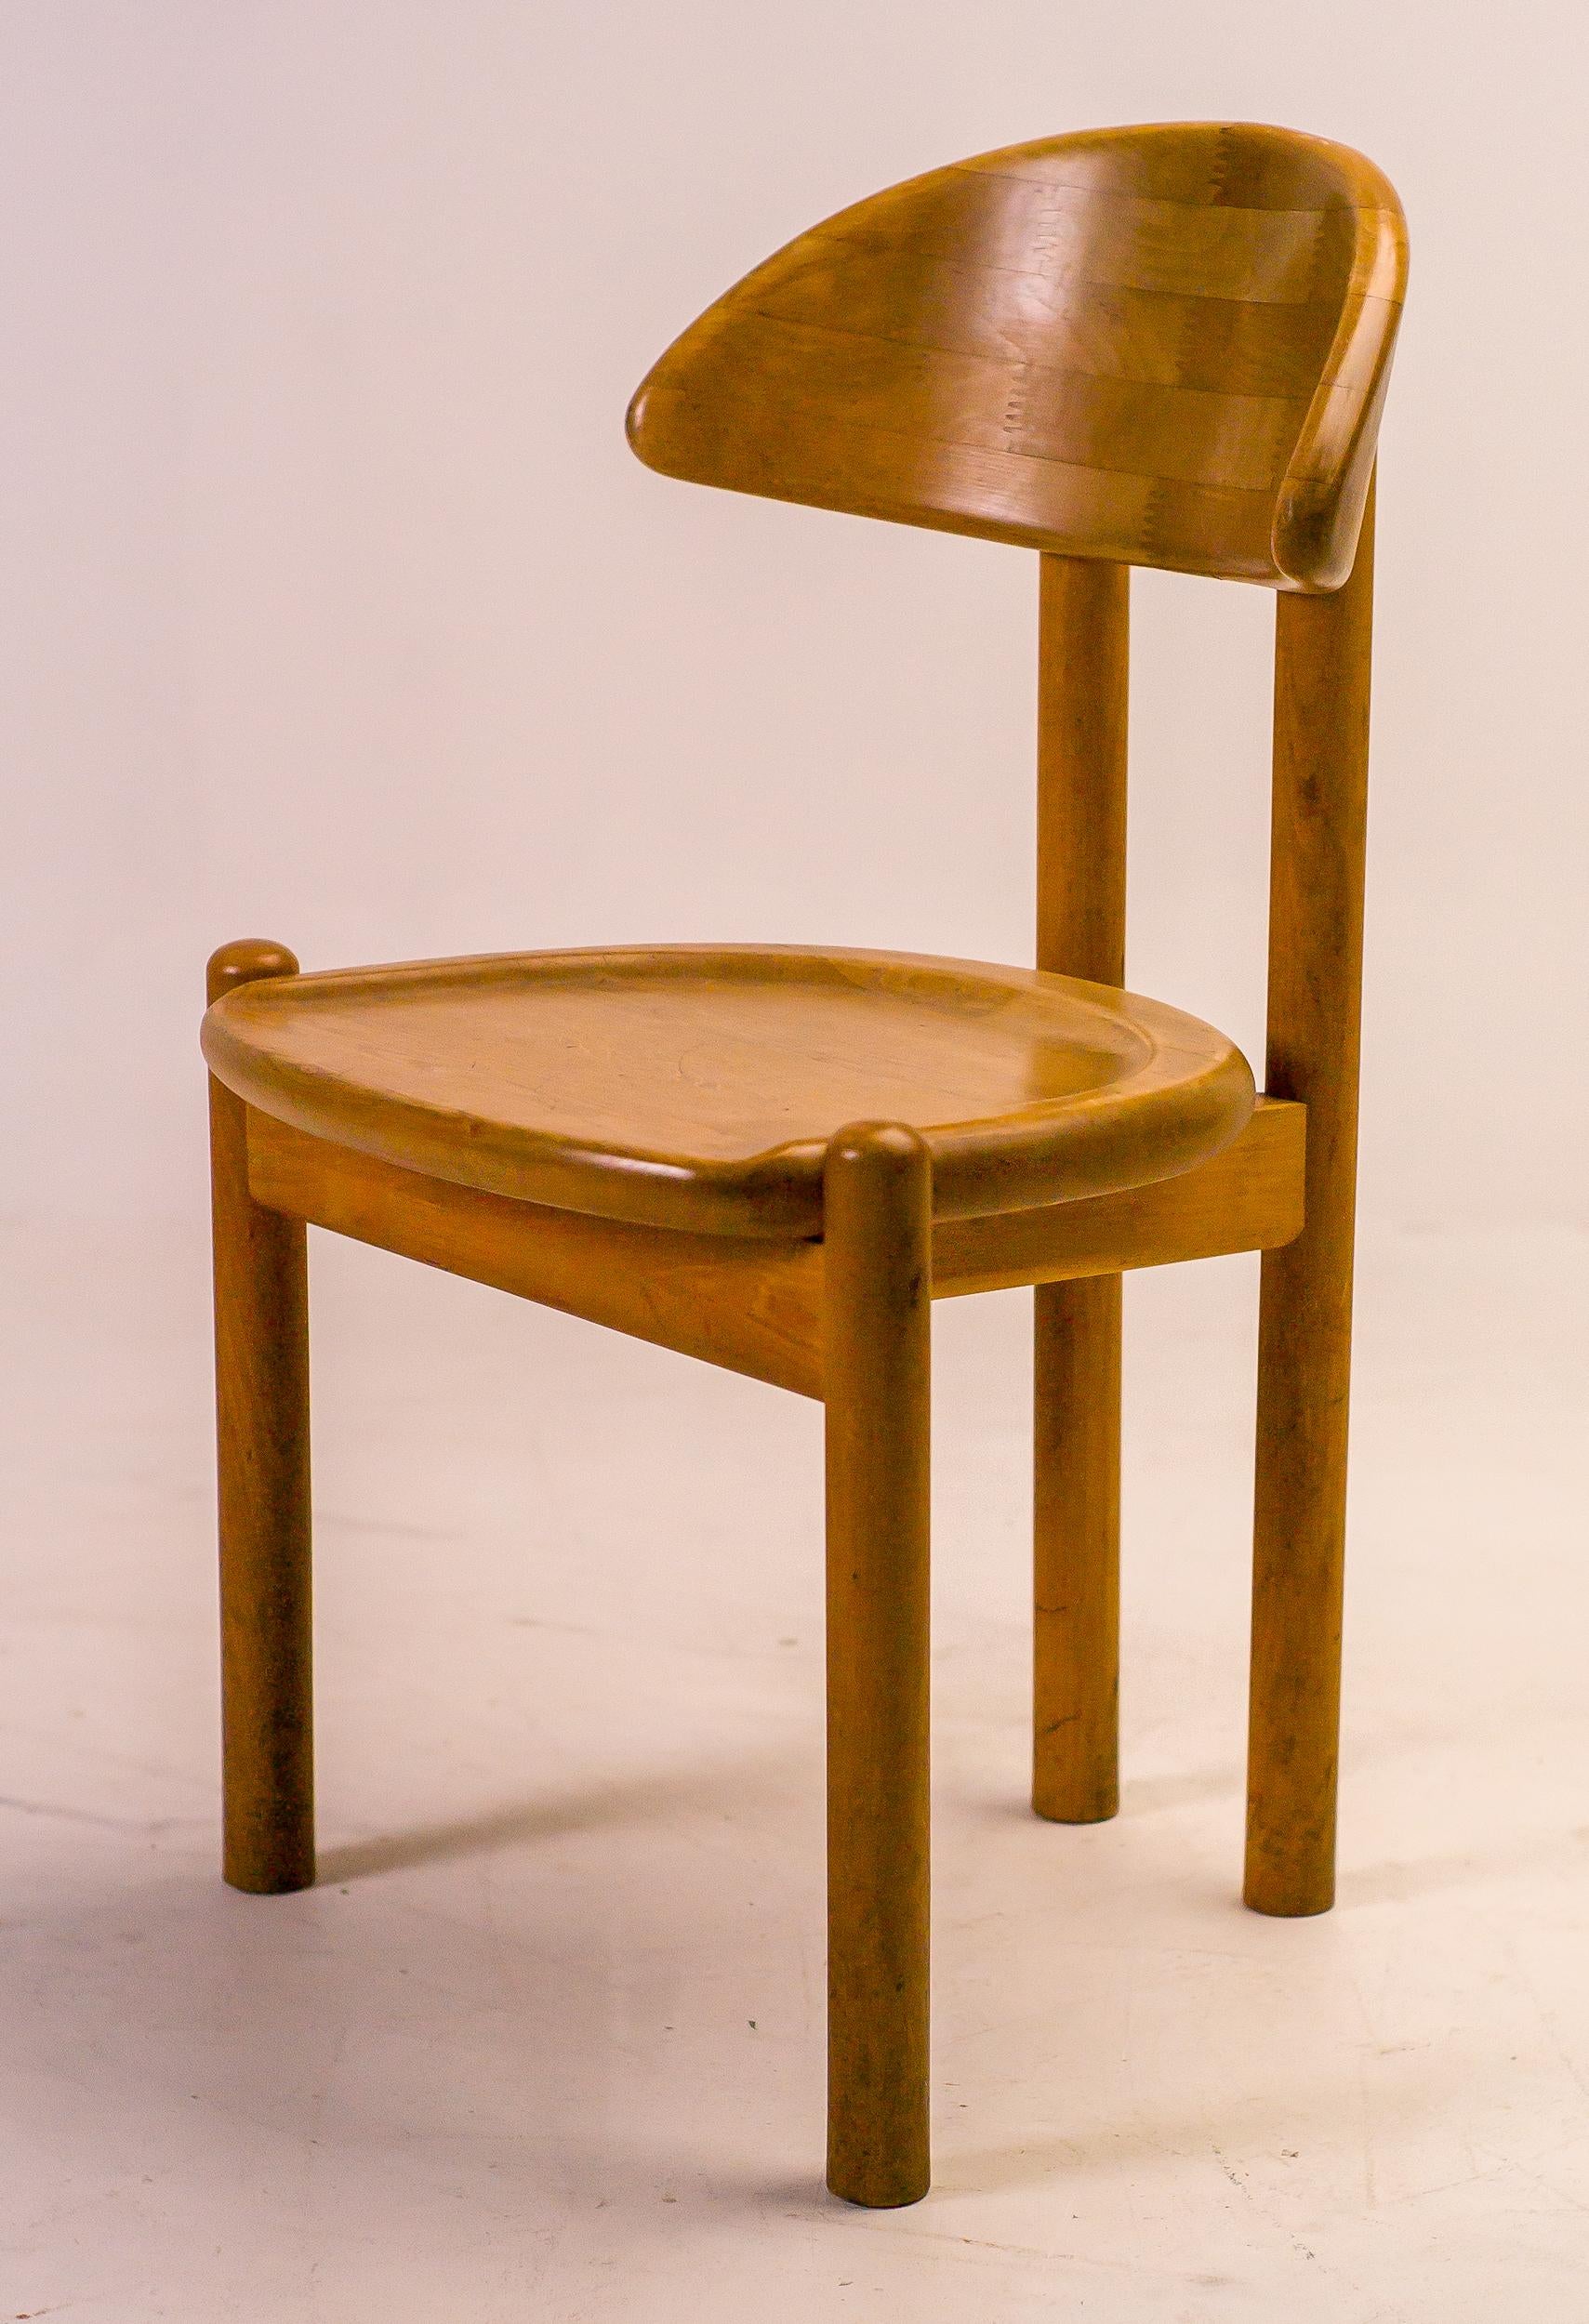 Skulpturaler organischer Stuhl aus massivem Ahornholz von Ansager Møbler, Dänemark.
Dänische Handwerkskunst, gekennzeichnet mit Ansager-Stempel.

Ansager, Dänemark, ist ein Synonym für außergewöhnliche Handwerkskunst und skandinavisches Design. Mit